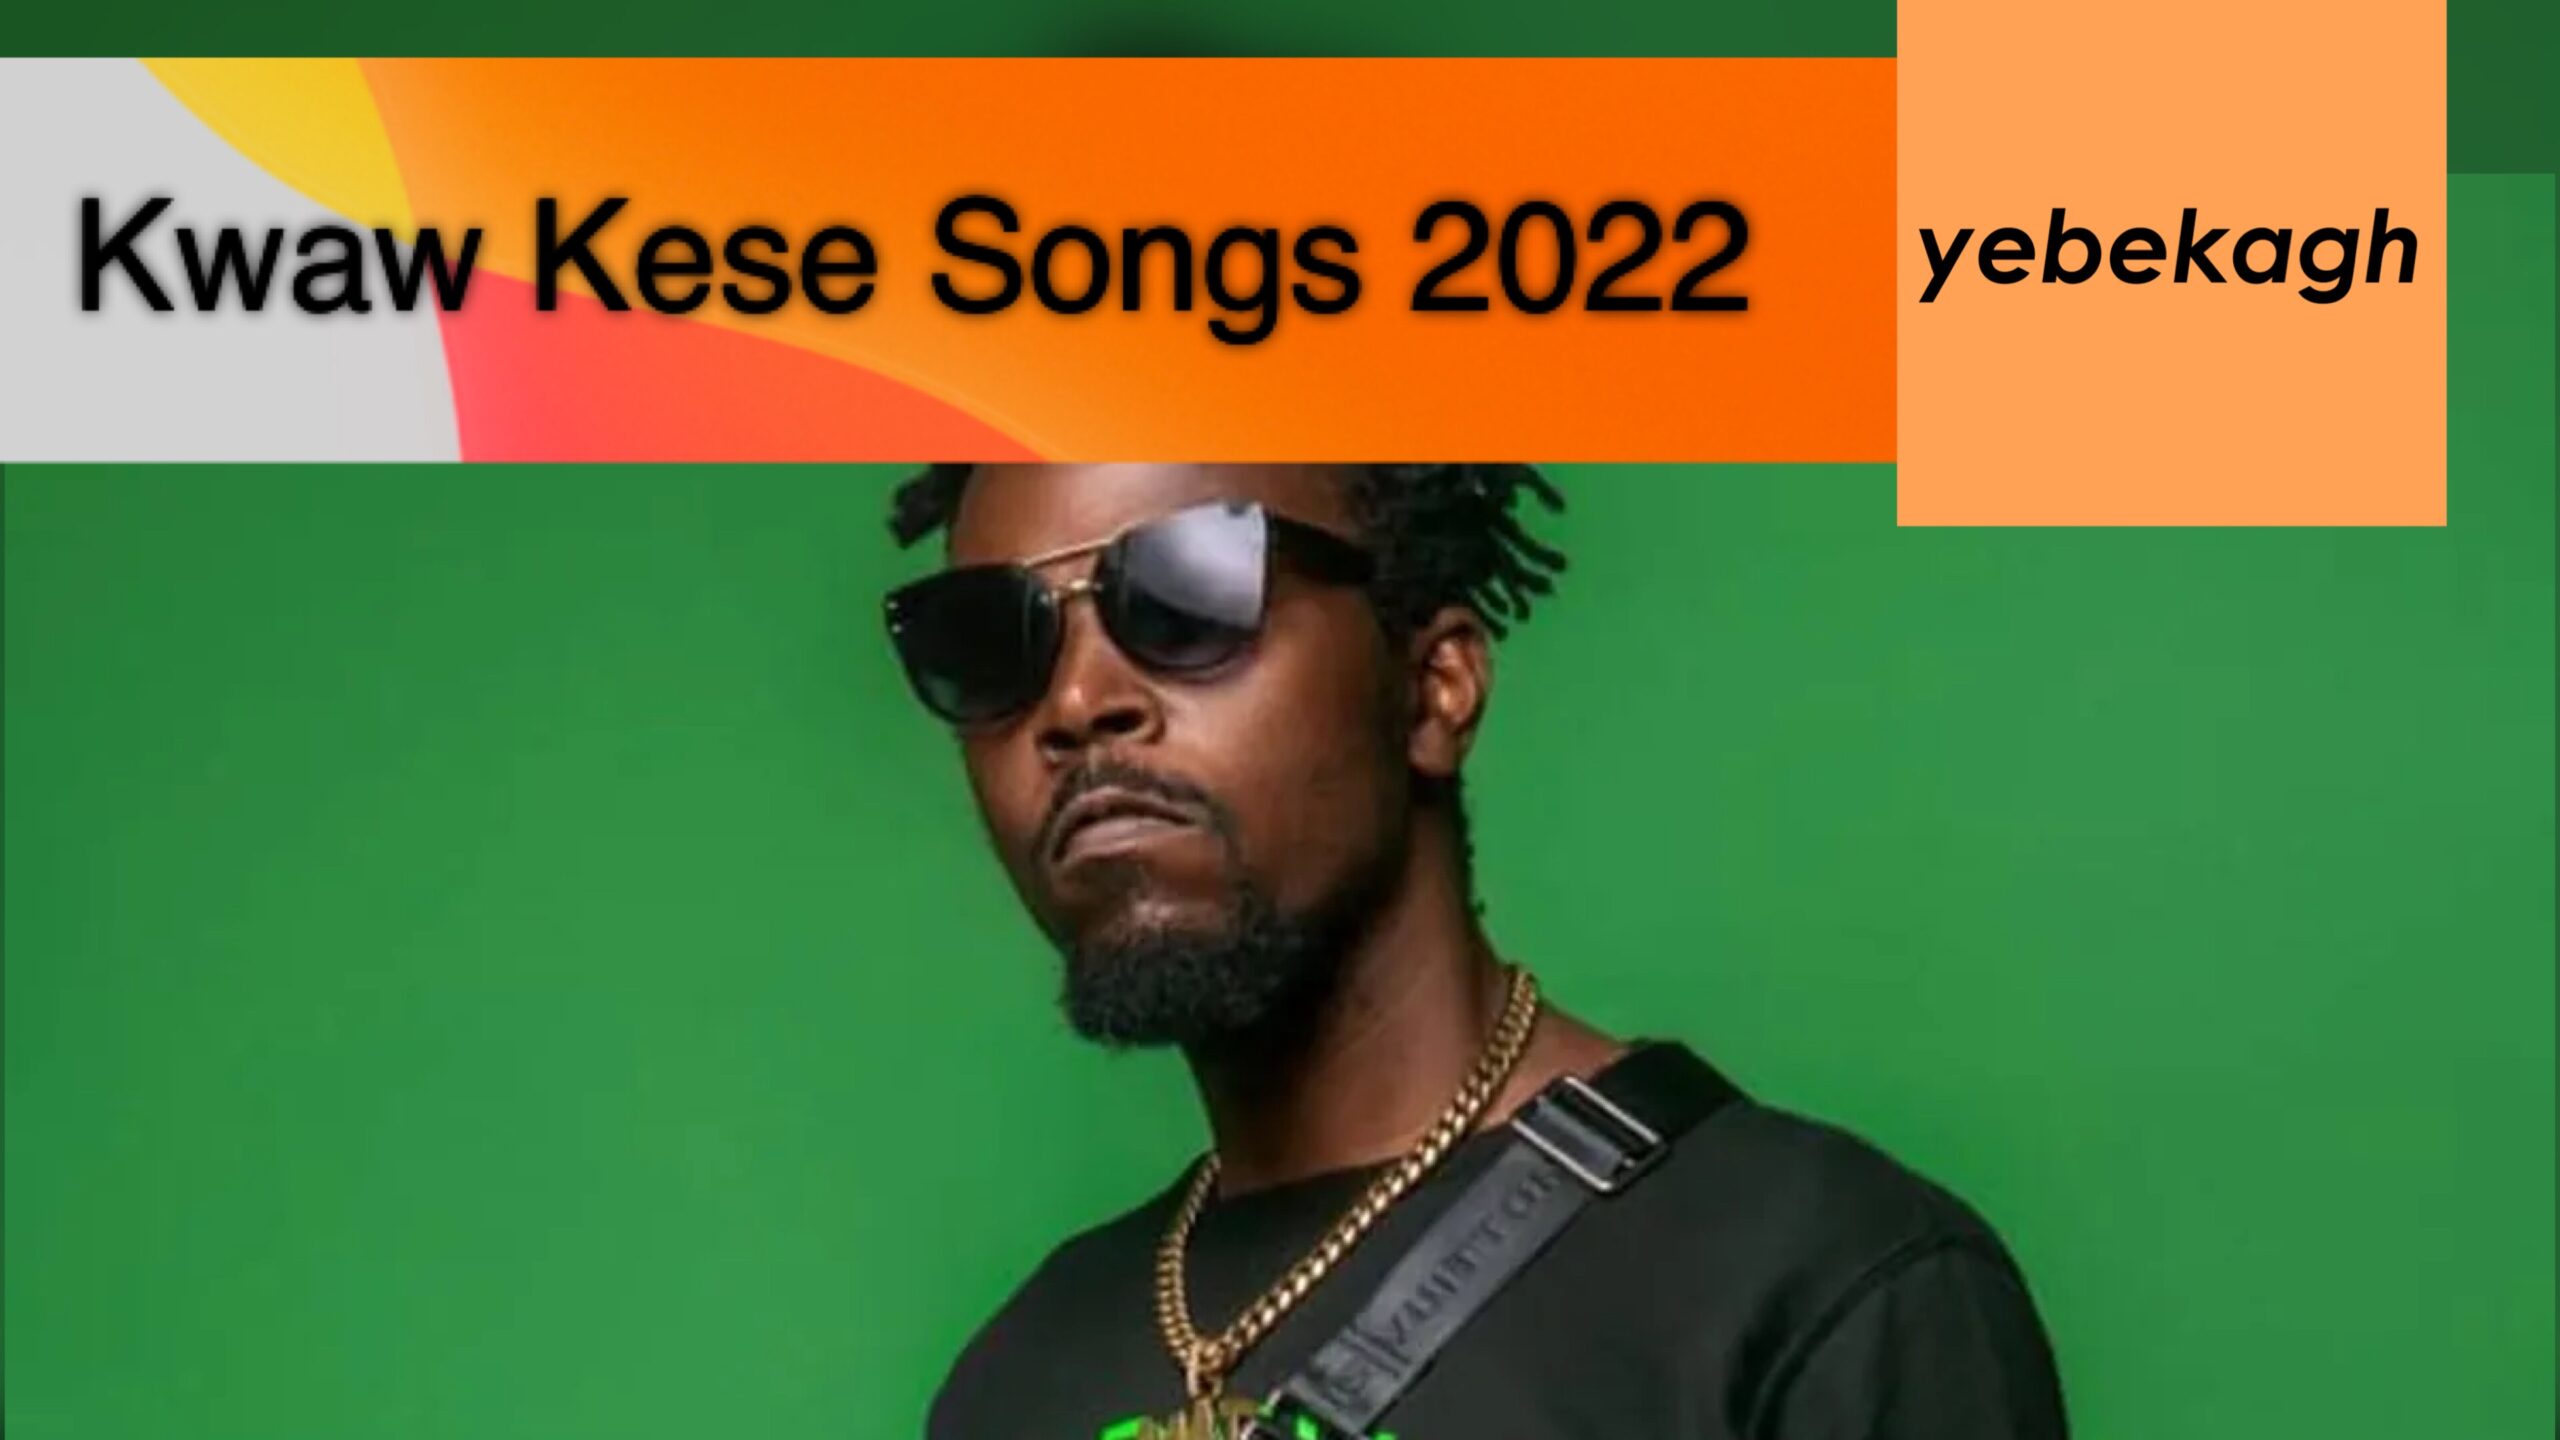 Full List of Kwaw Kesse Songs in 2022